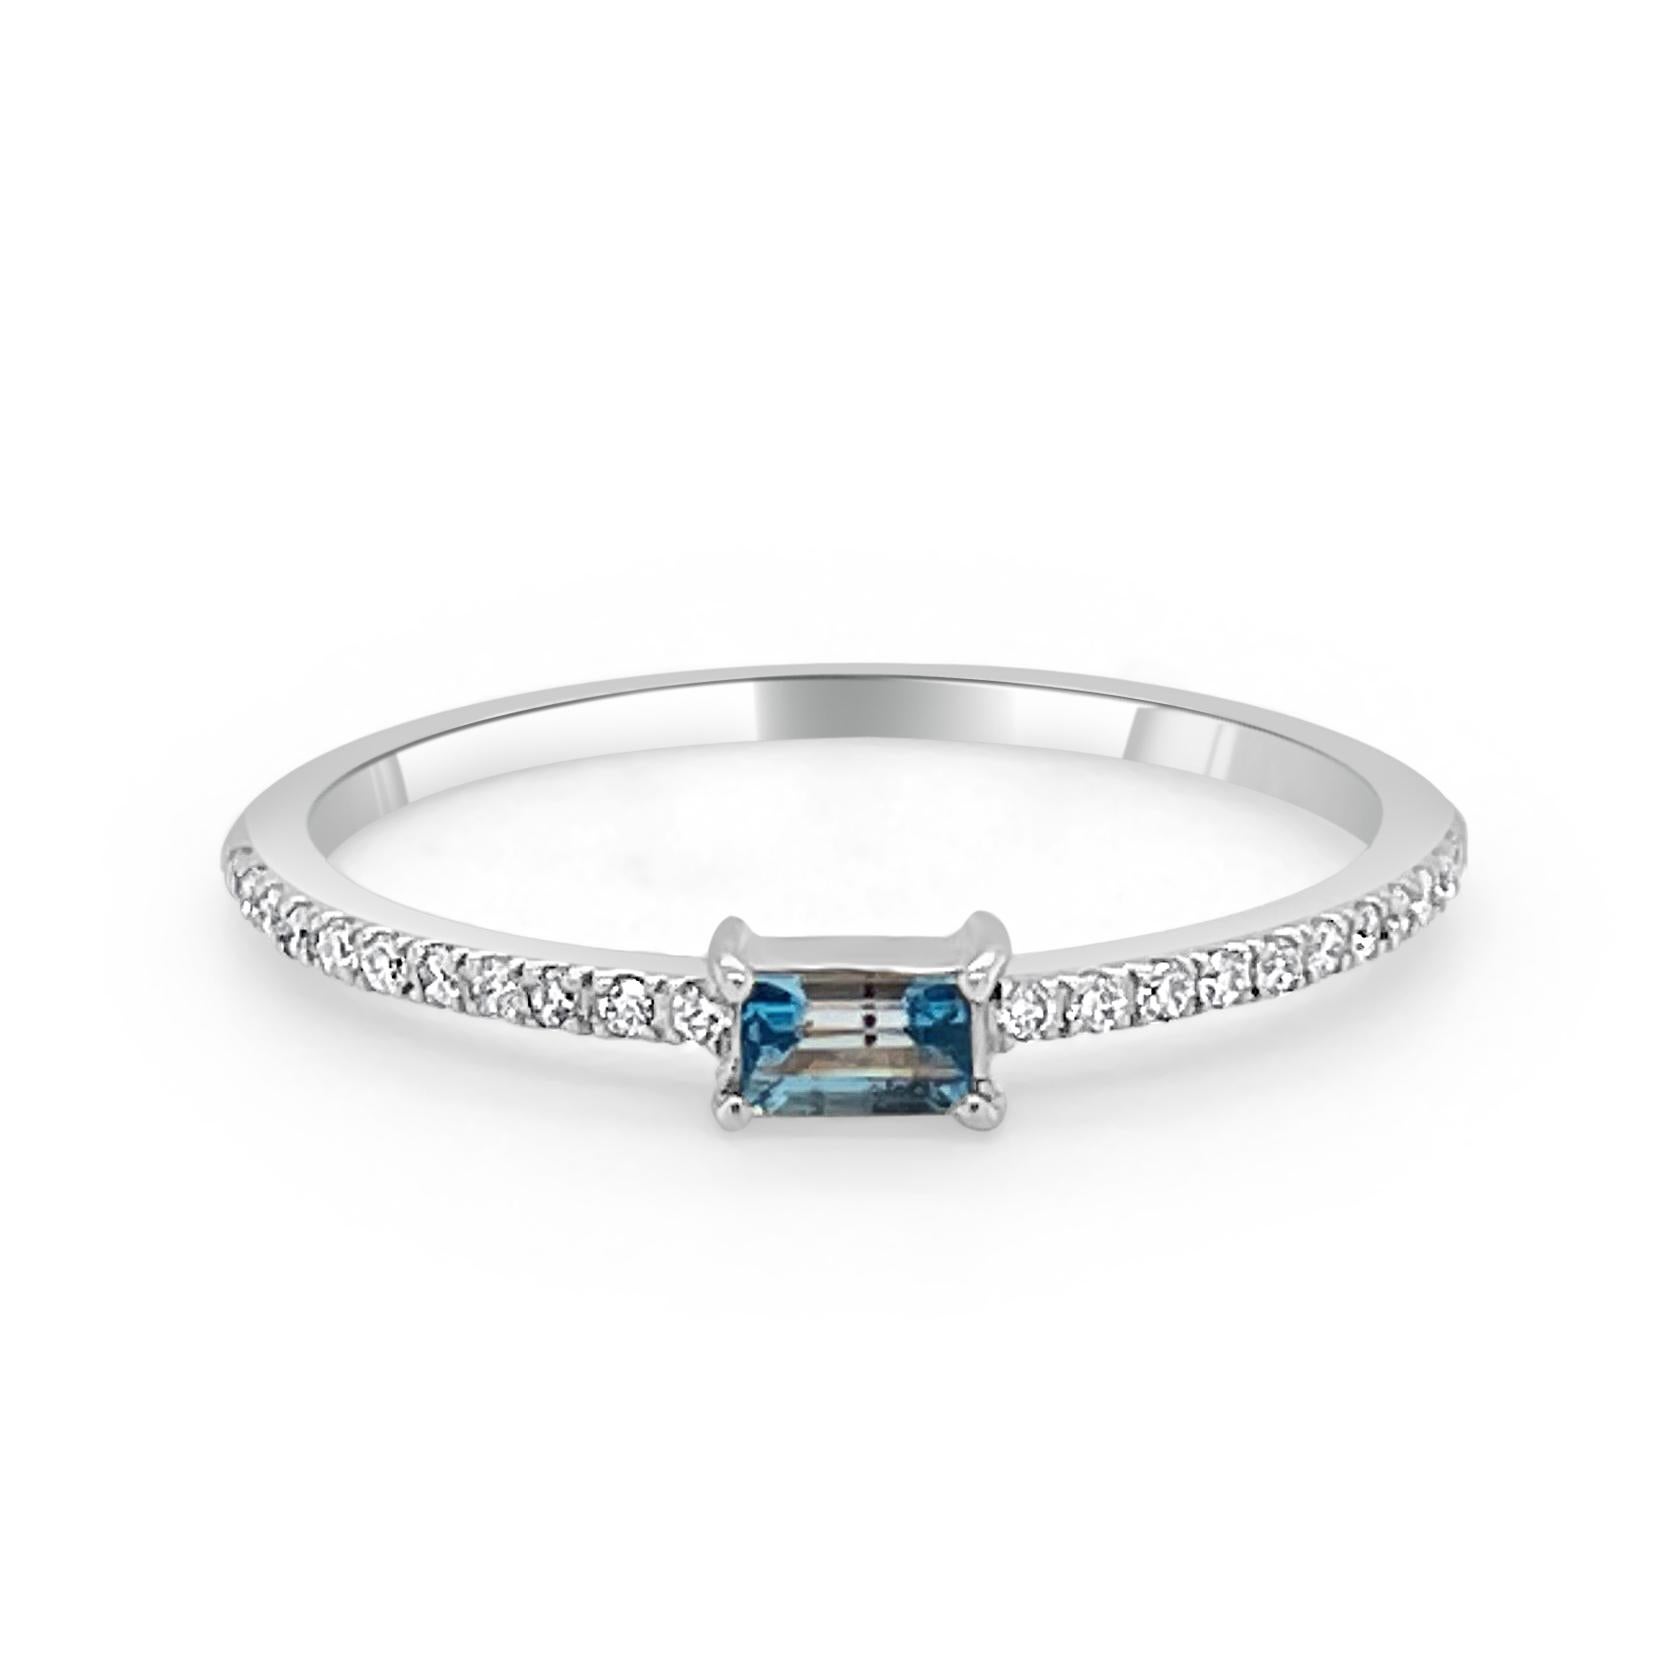 Charmantes und schwer fassbares Design - Dieser stapelbare Ring besteht aus einem 14-karätigen Goldband, einem wunderschönen blauen Topas in Baguetteform (ca. 0,16 ct) und runden Diamanten (ca. 0,09 ct). 
Maße für die Ringgröße: Die Fingergröße des